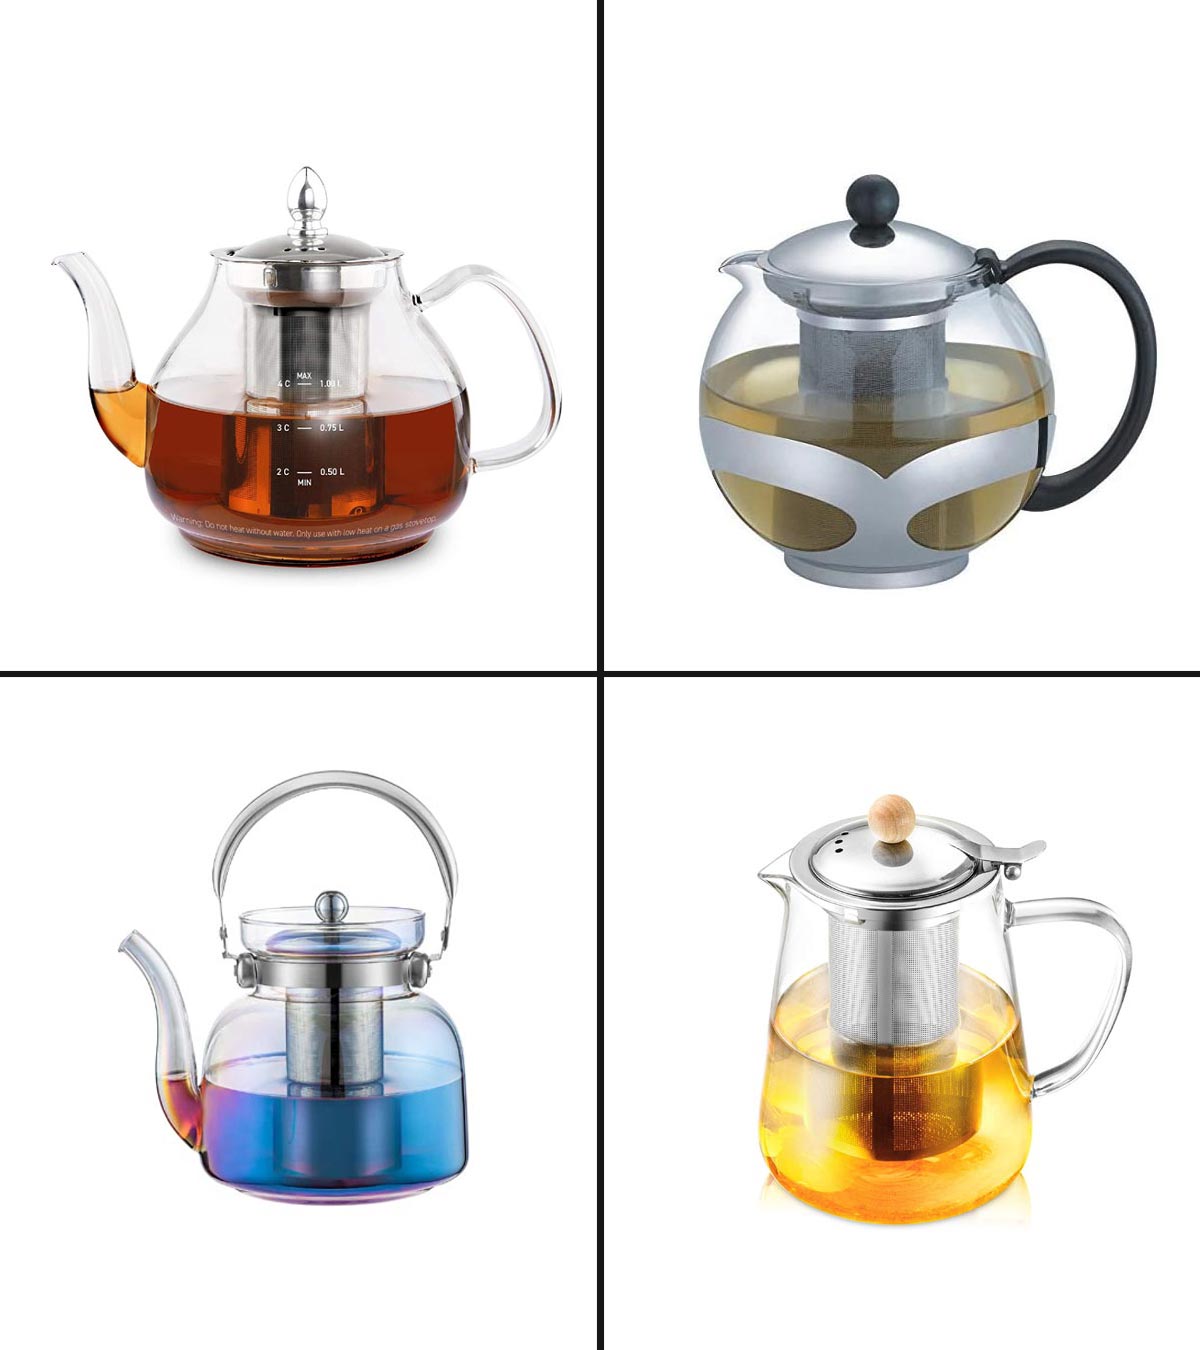 https://www.momjunction.com/wp-content/uploads/2021/02/13-Best-Glass-Teapots-in-2021.jpg